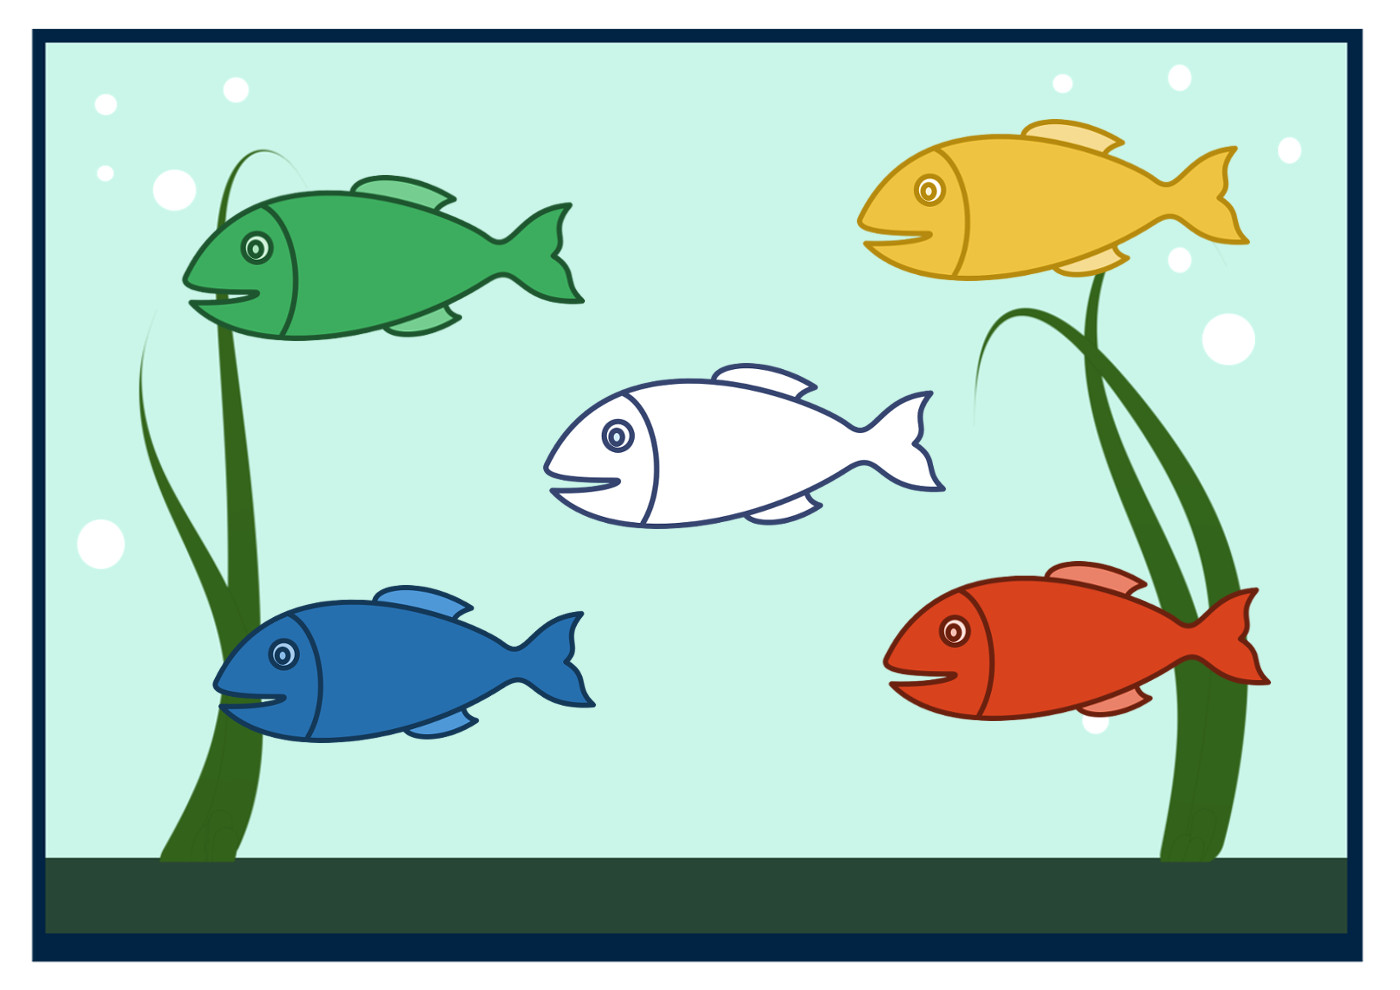 Аквариумные рыбки средняя группа. Аквариум с рыбками рисунок. Аквариум с рыбками для детей. Аквариум с рыбками рисунок для детей. Рыбка картинка для детей.